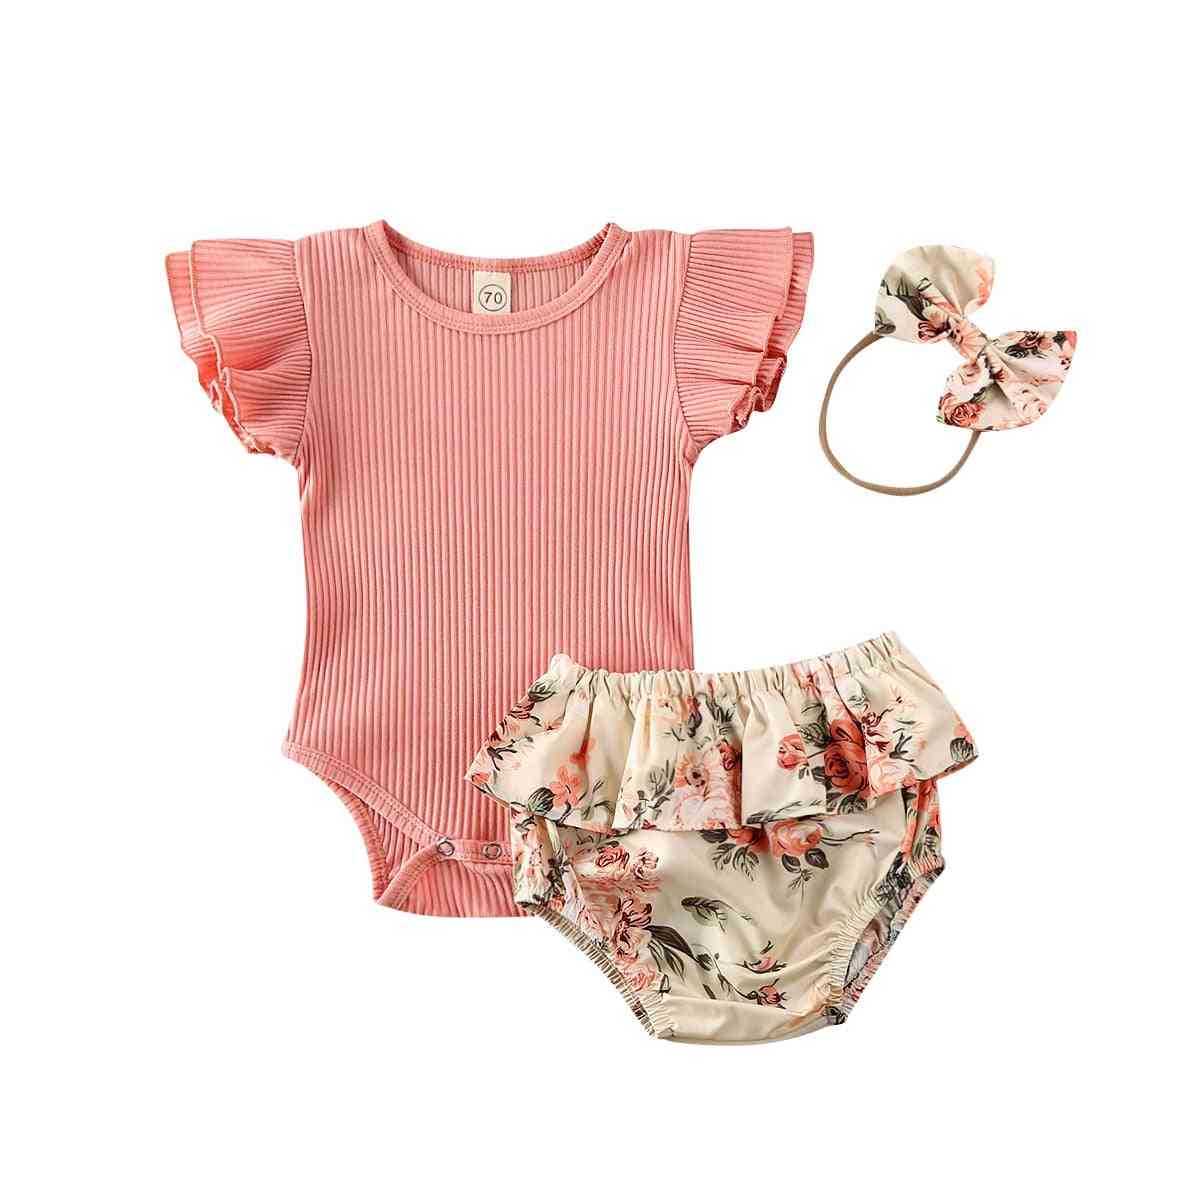 Baby sommer klær spedbarn nyfødt baby jente ruffled / ribbet / bodysuit, blomster shorts pannebånd